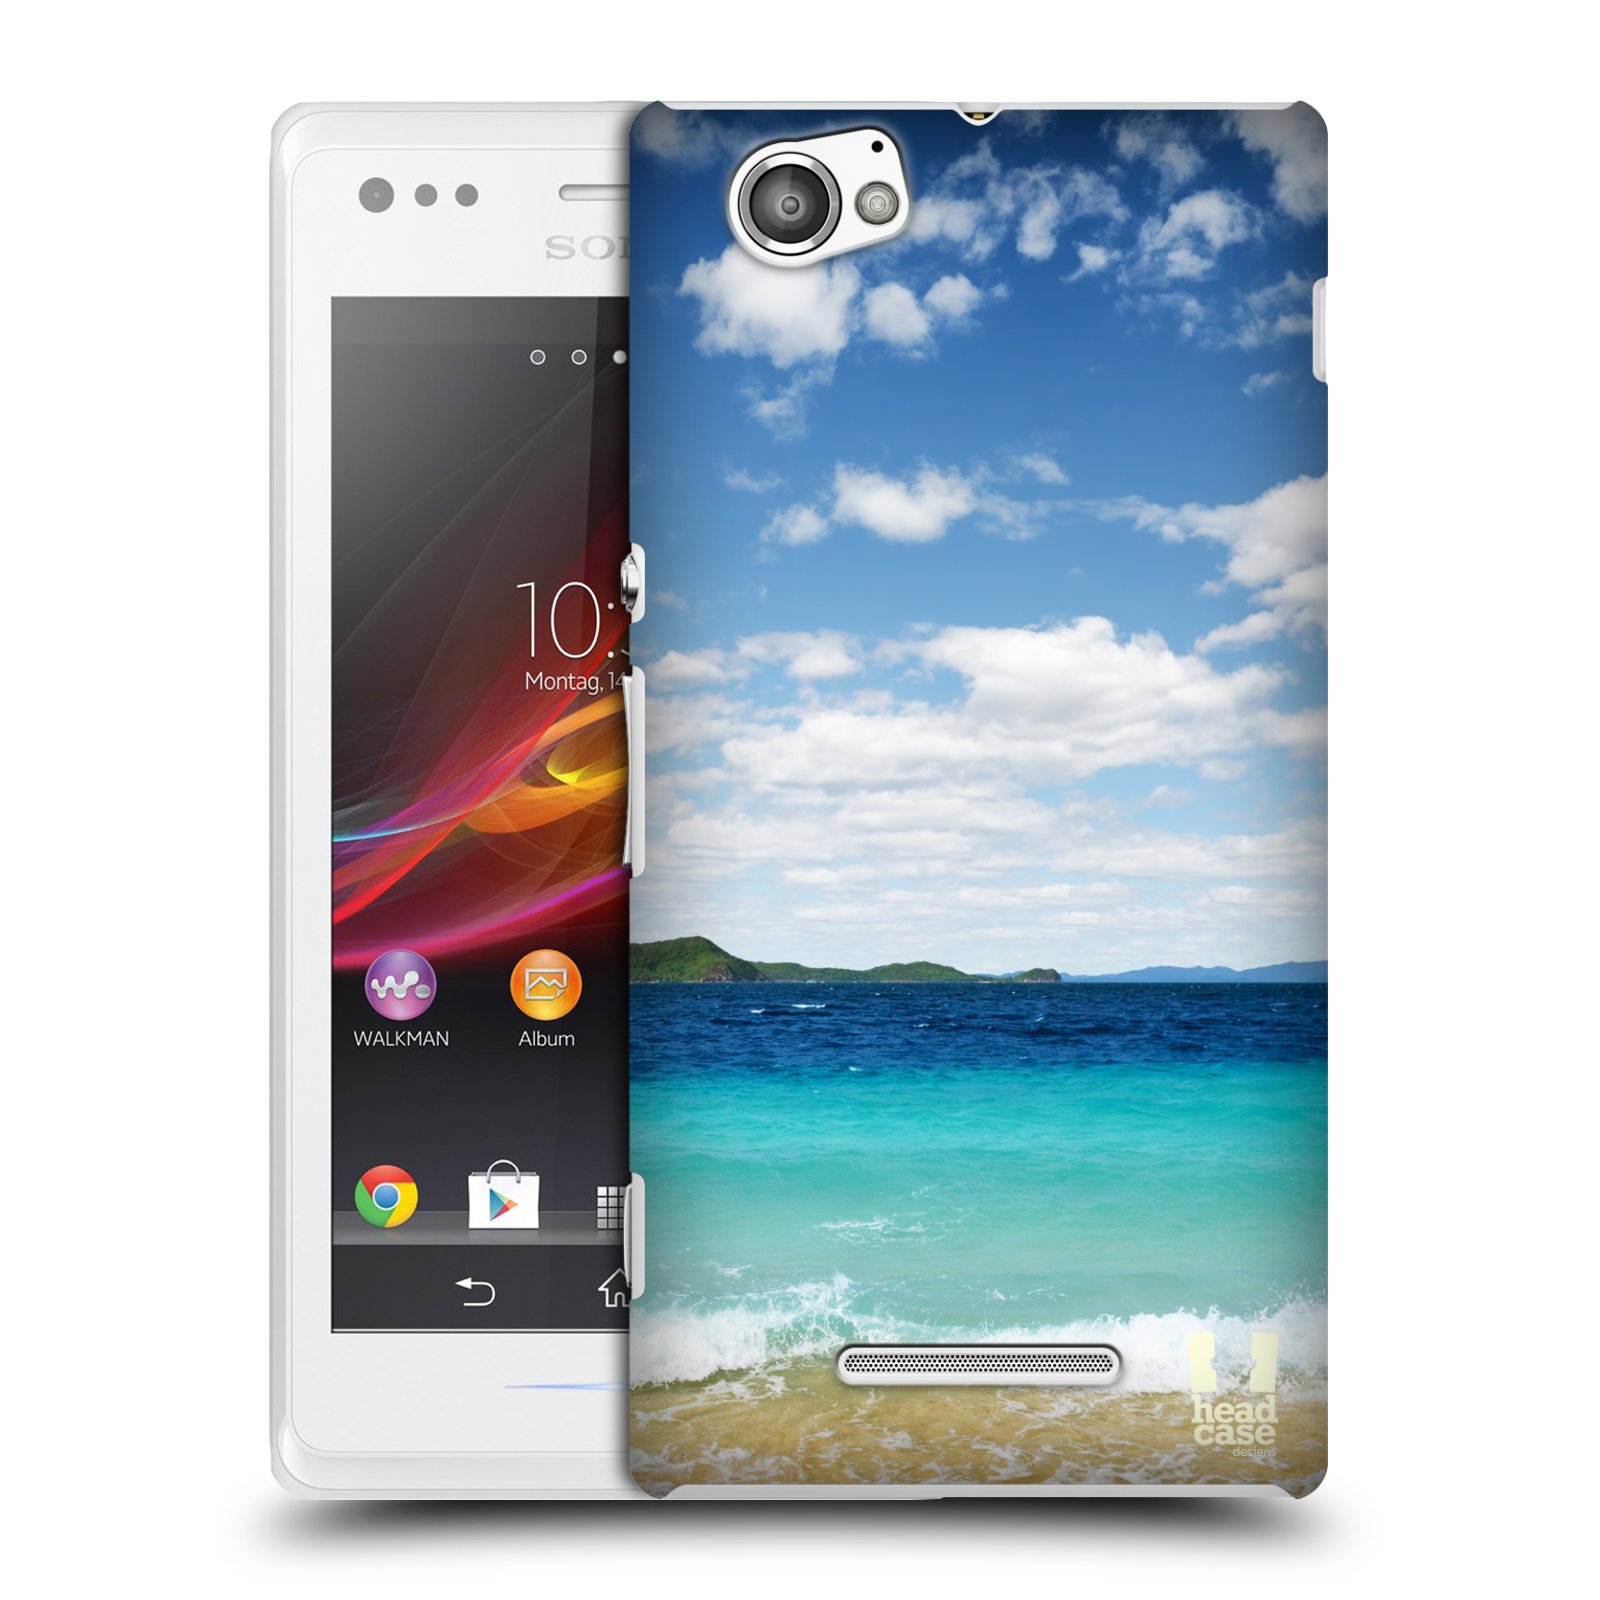 HEAD CASE plastový obal na mobil Sony Xperia M vzor Pláže a Moře VZDÁLENÝ OSTROV